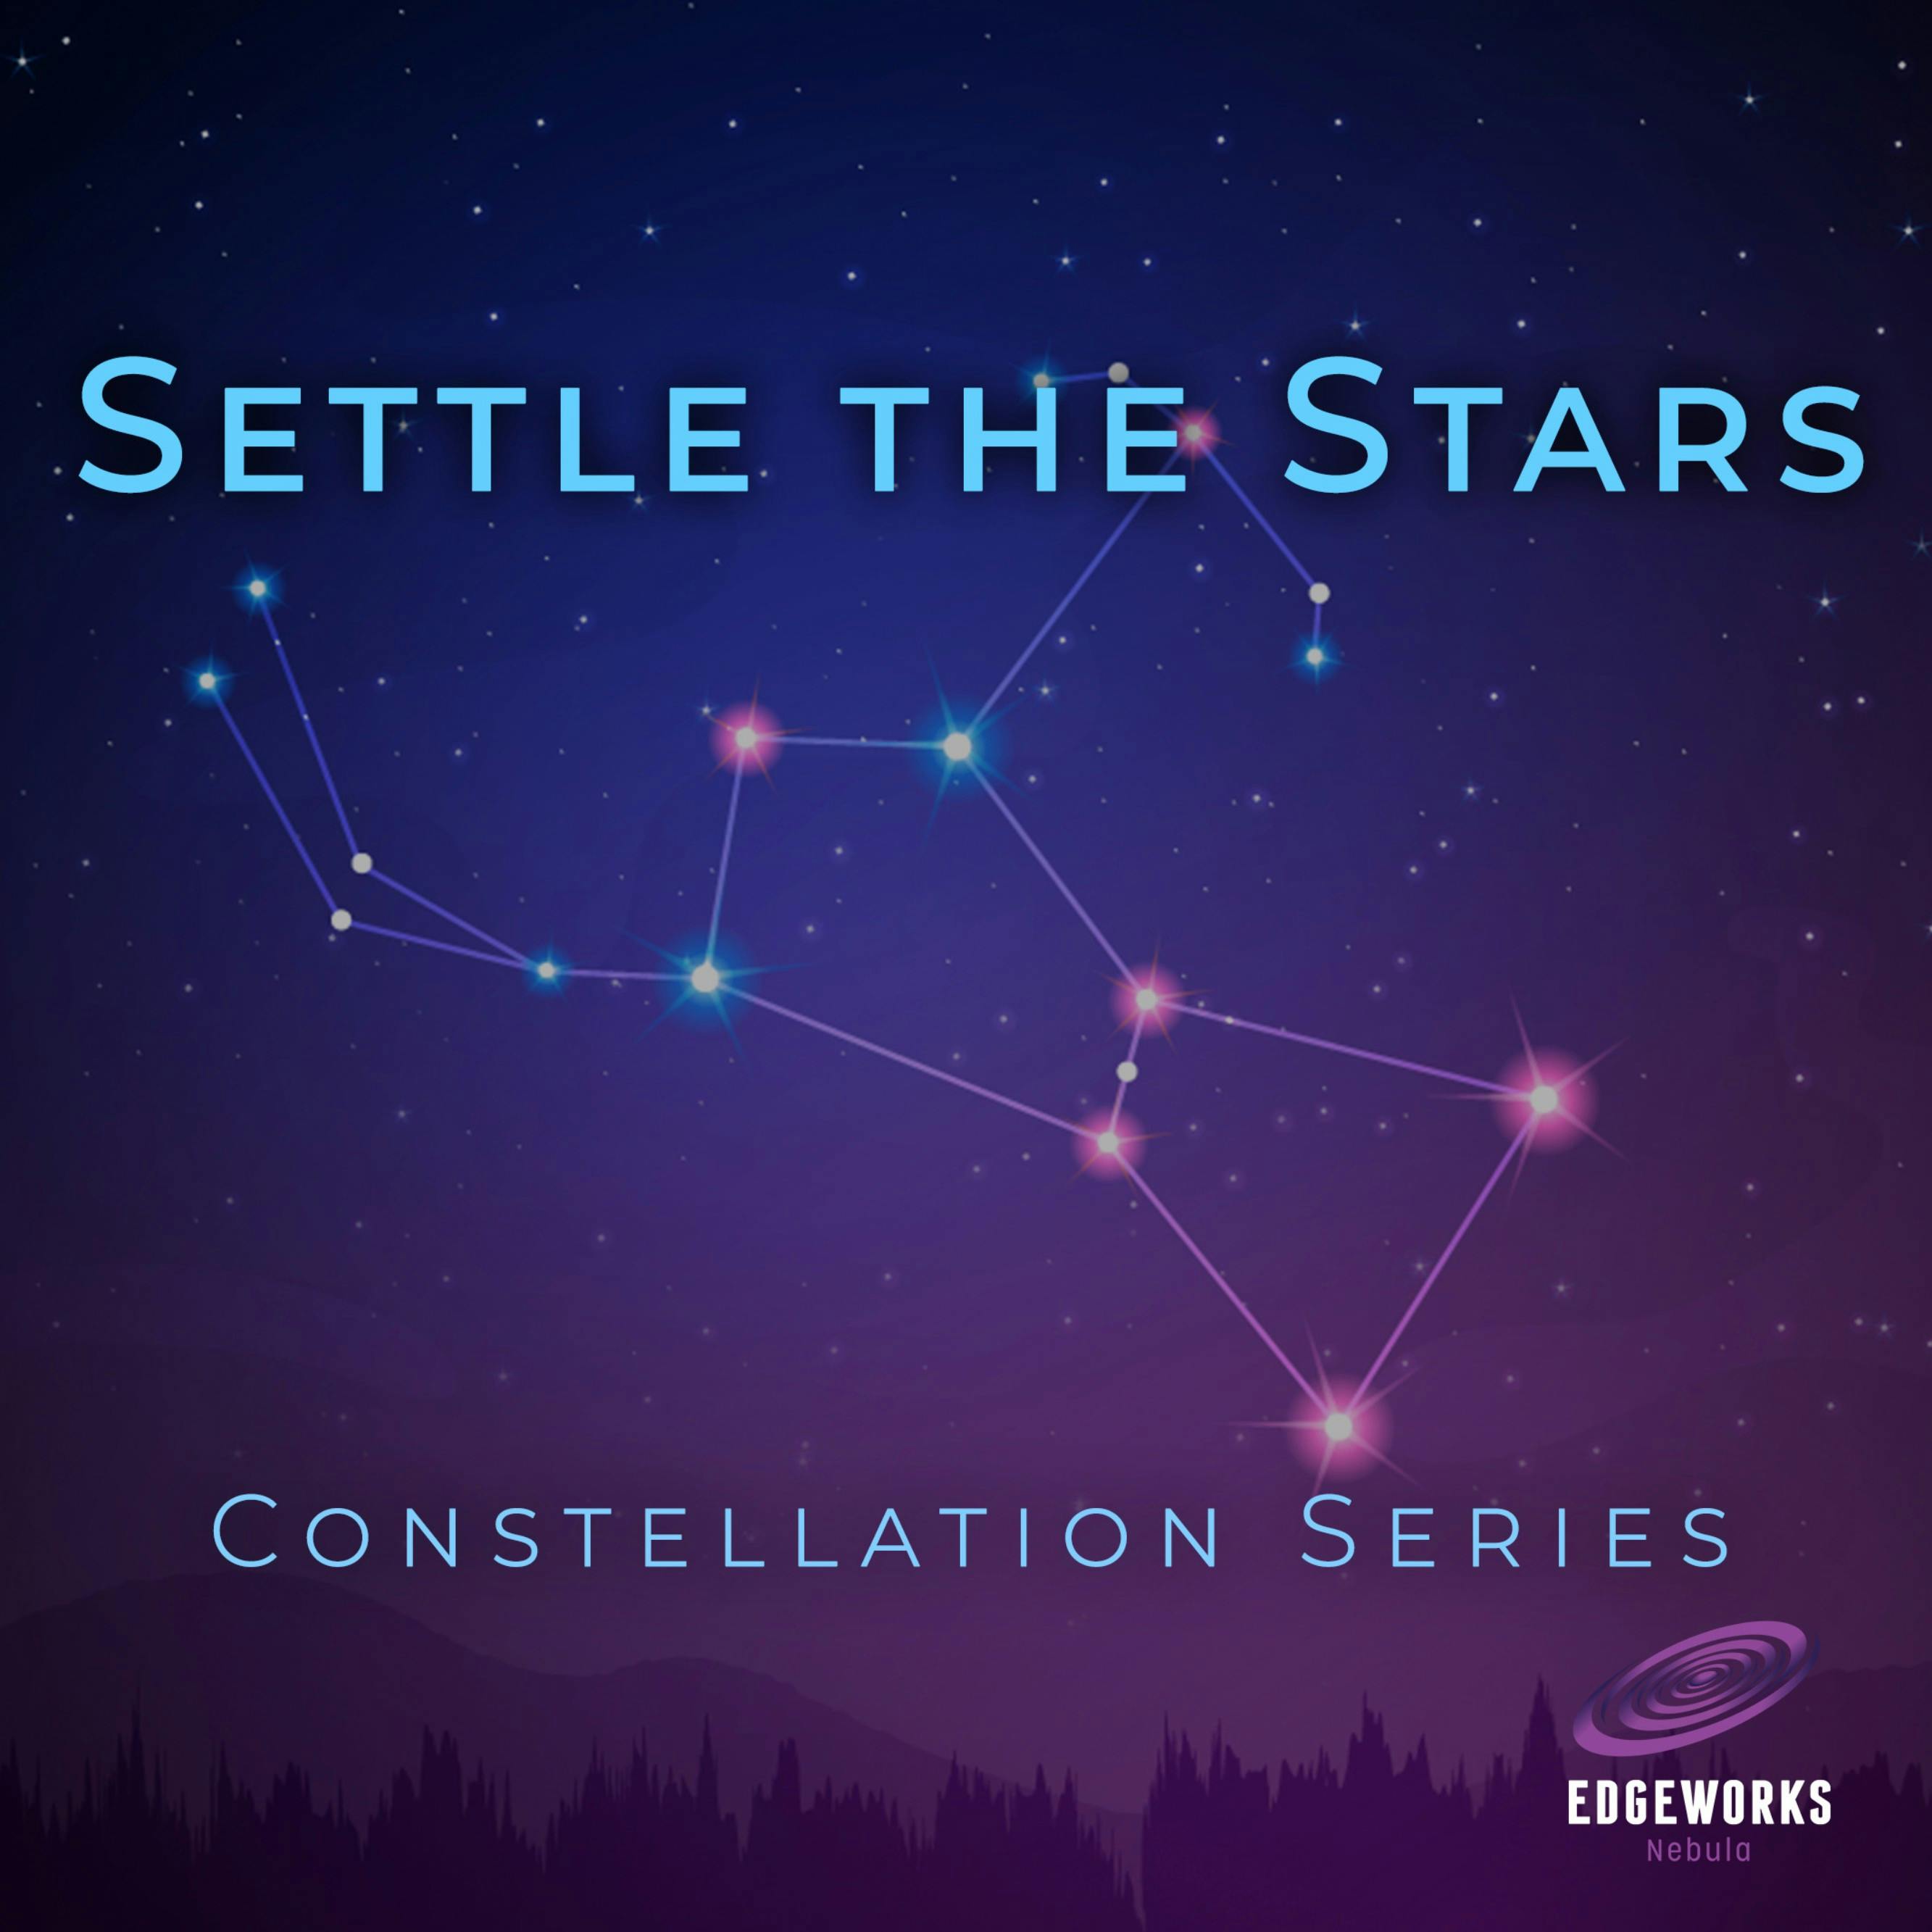 Season 3: Constellations & Their Greek Myths